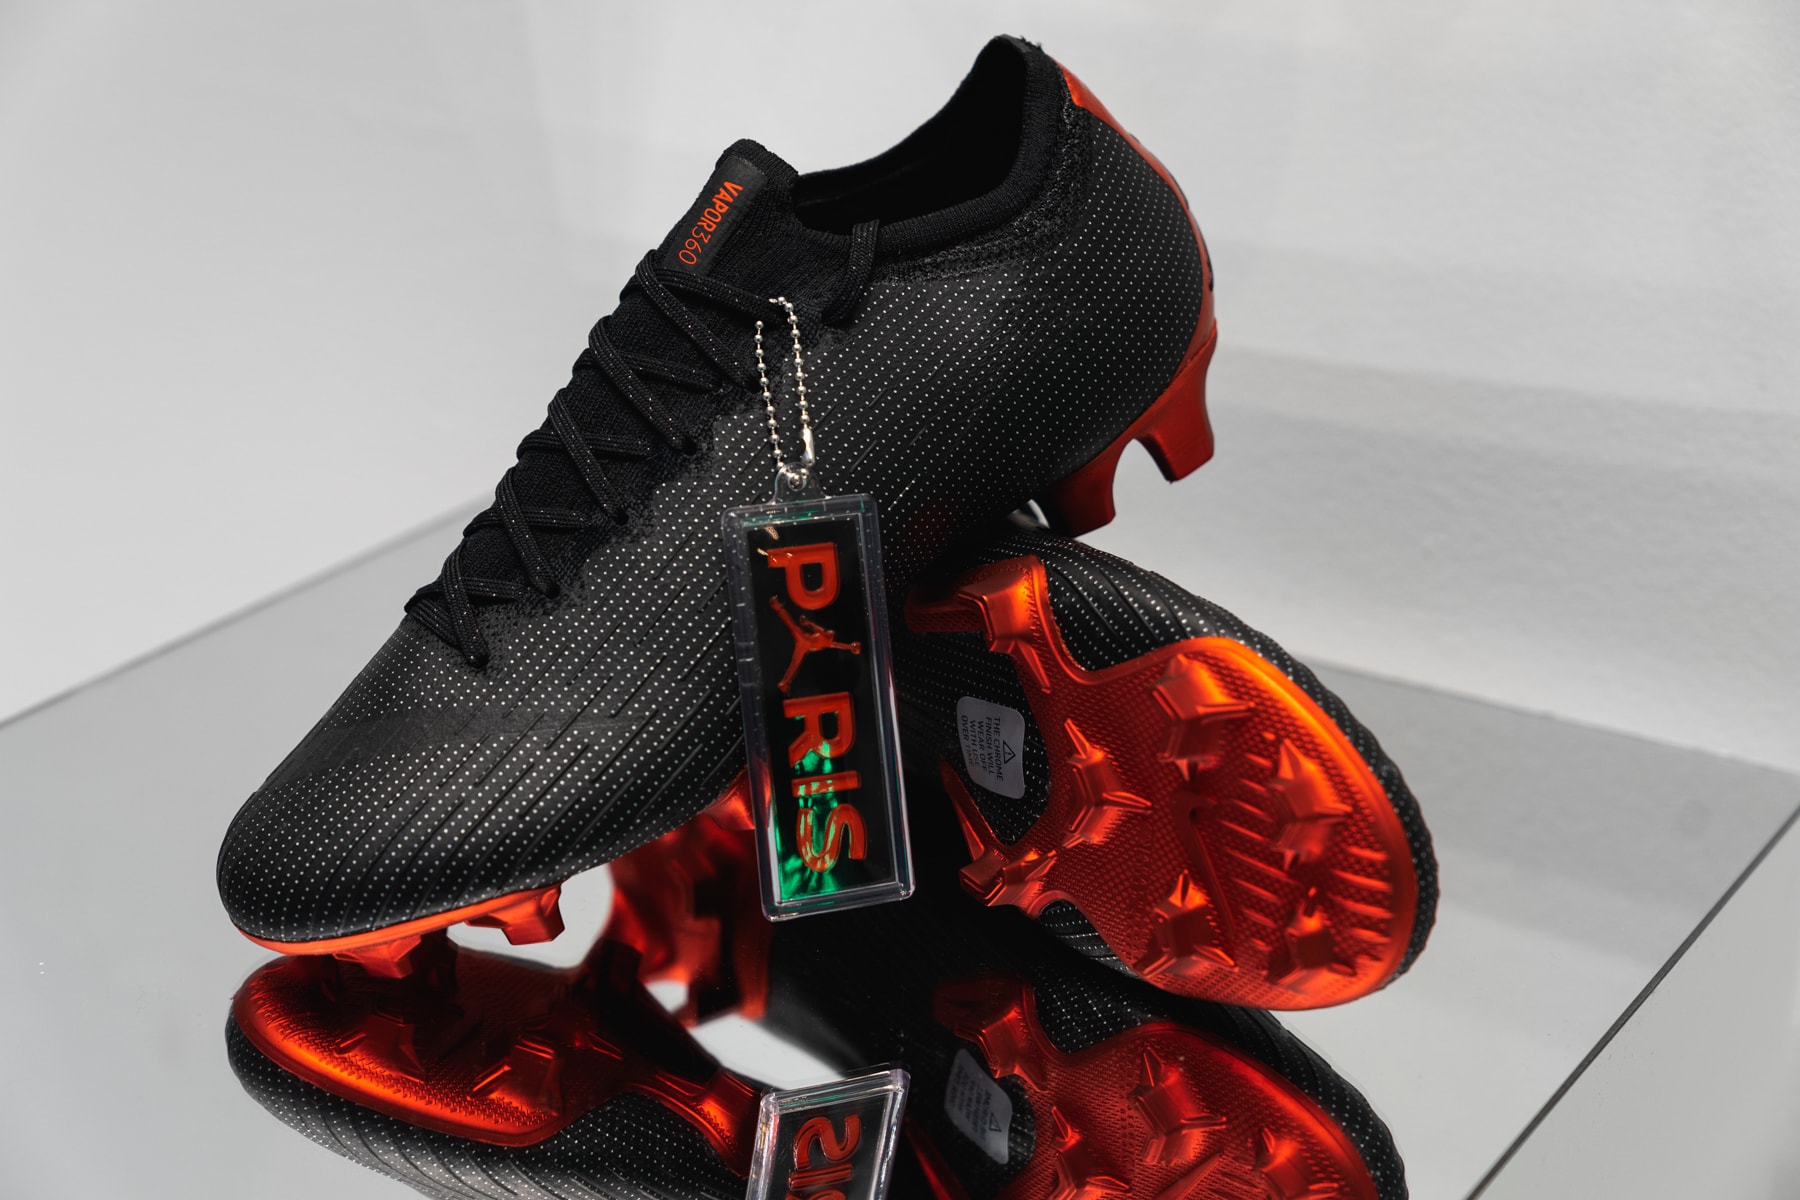 jordan brand paris saint germain collection exclusive look 2018 2019 football boots sneakers apparel air jordan 5 air jordan 1